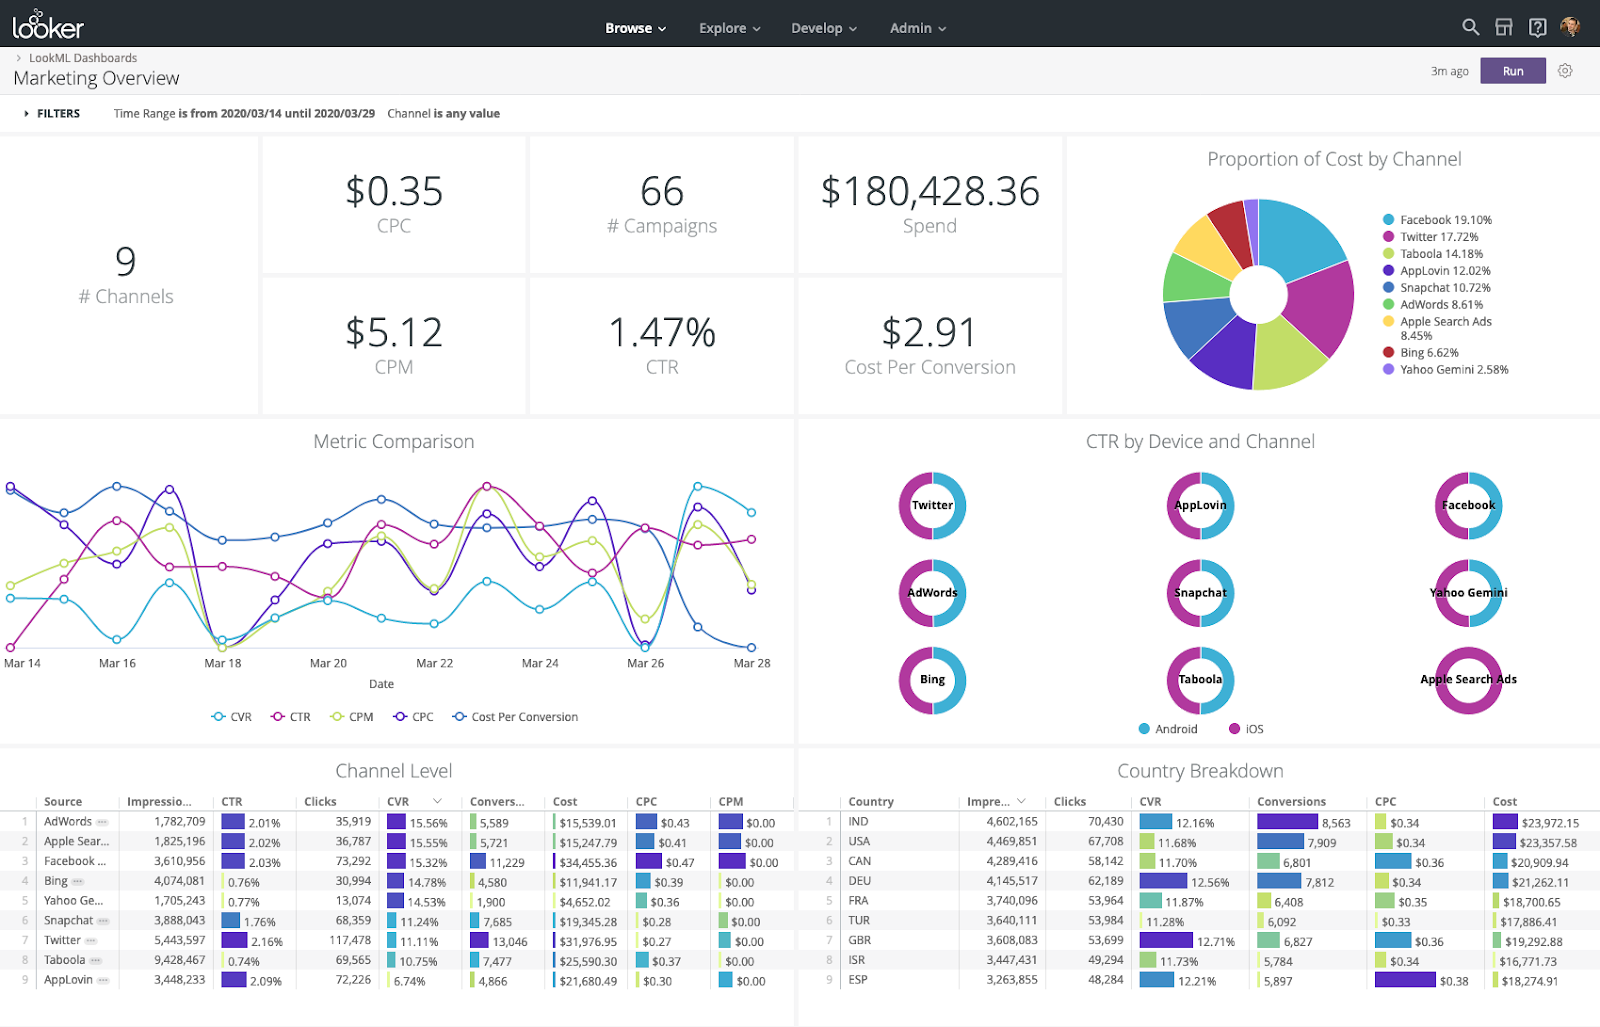 Looker to oprogramowanie do analizy biznesowej i platforma analityczna dla dużych przedsiębiorstw, która pomaga użytkownikom eksplorować, analizować i udostępniać analizy biznesowe w czasie rzeczywistym.